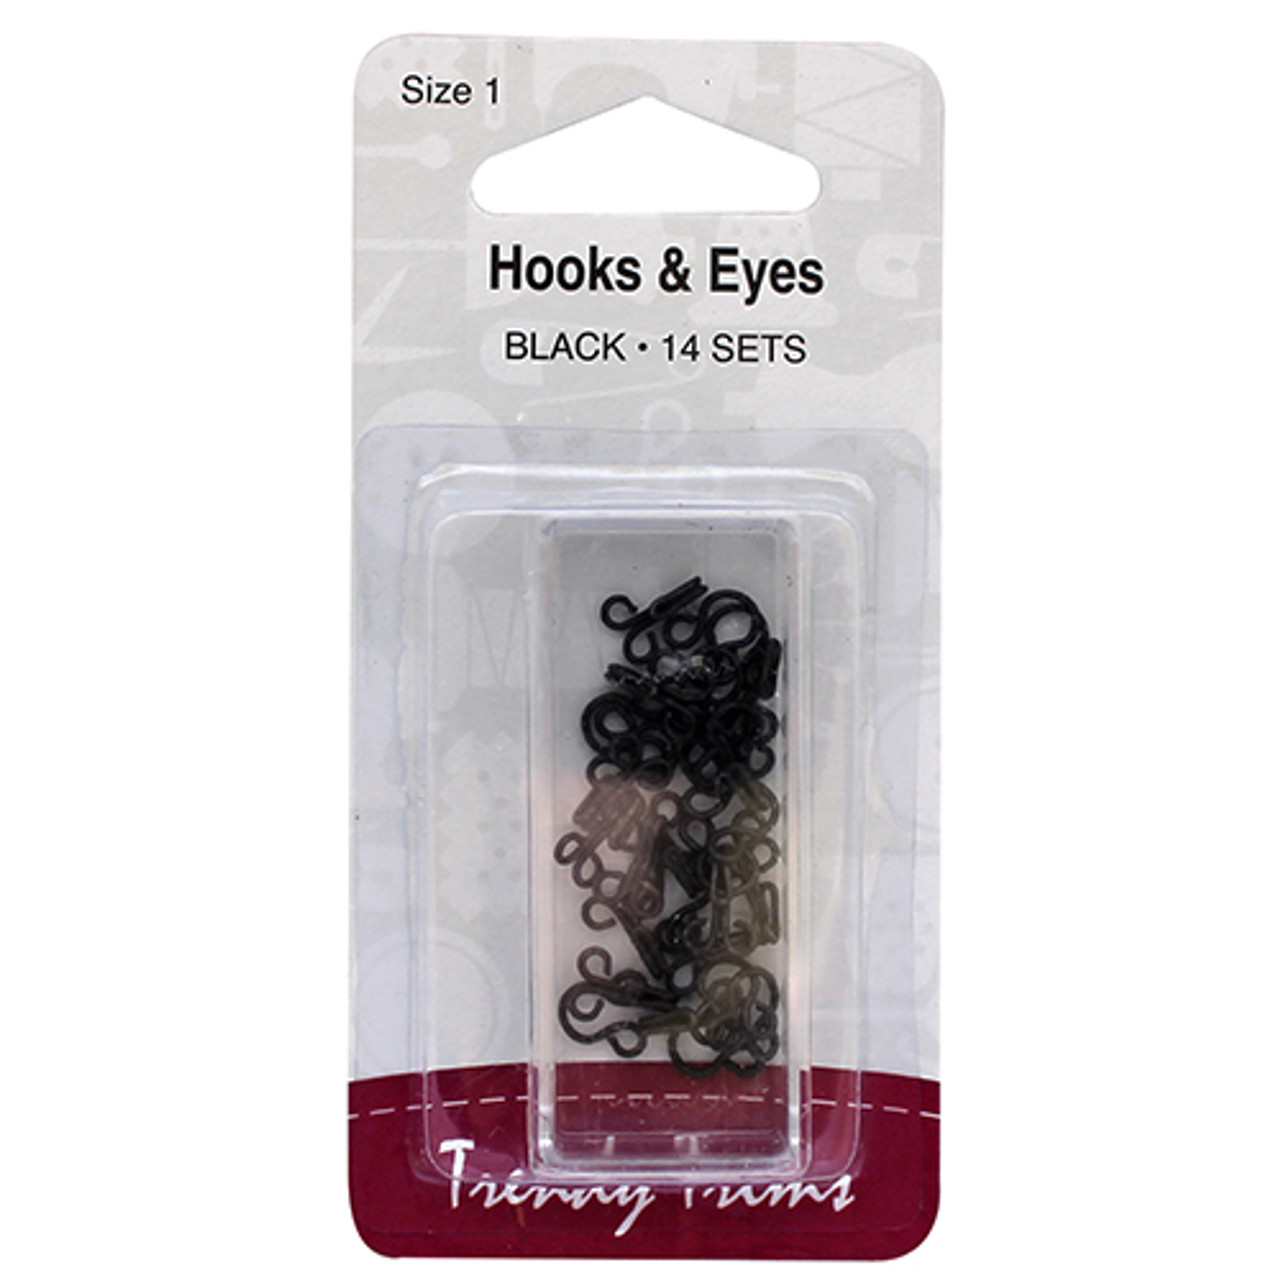 Hooks and Eyes Black x 14